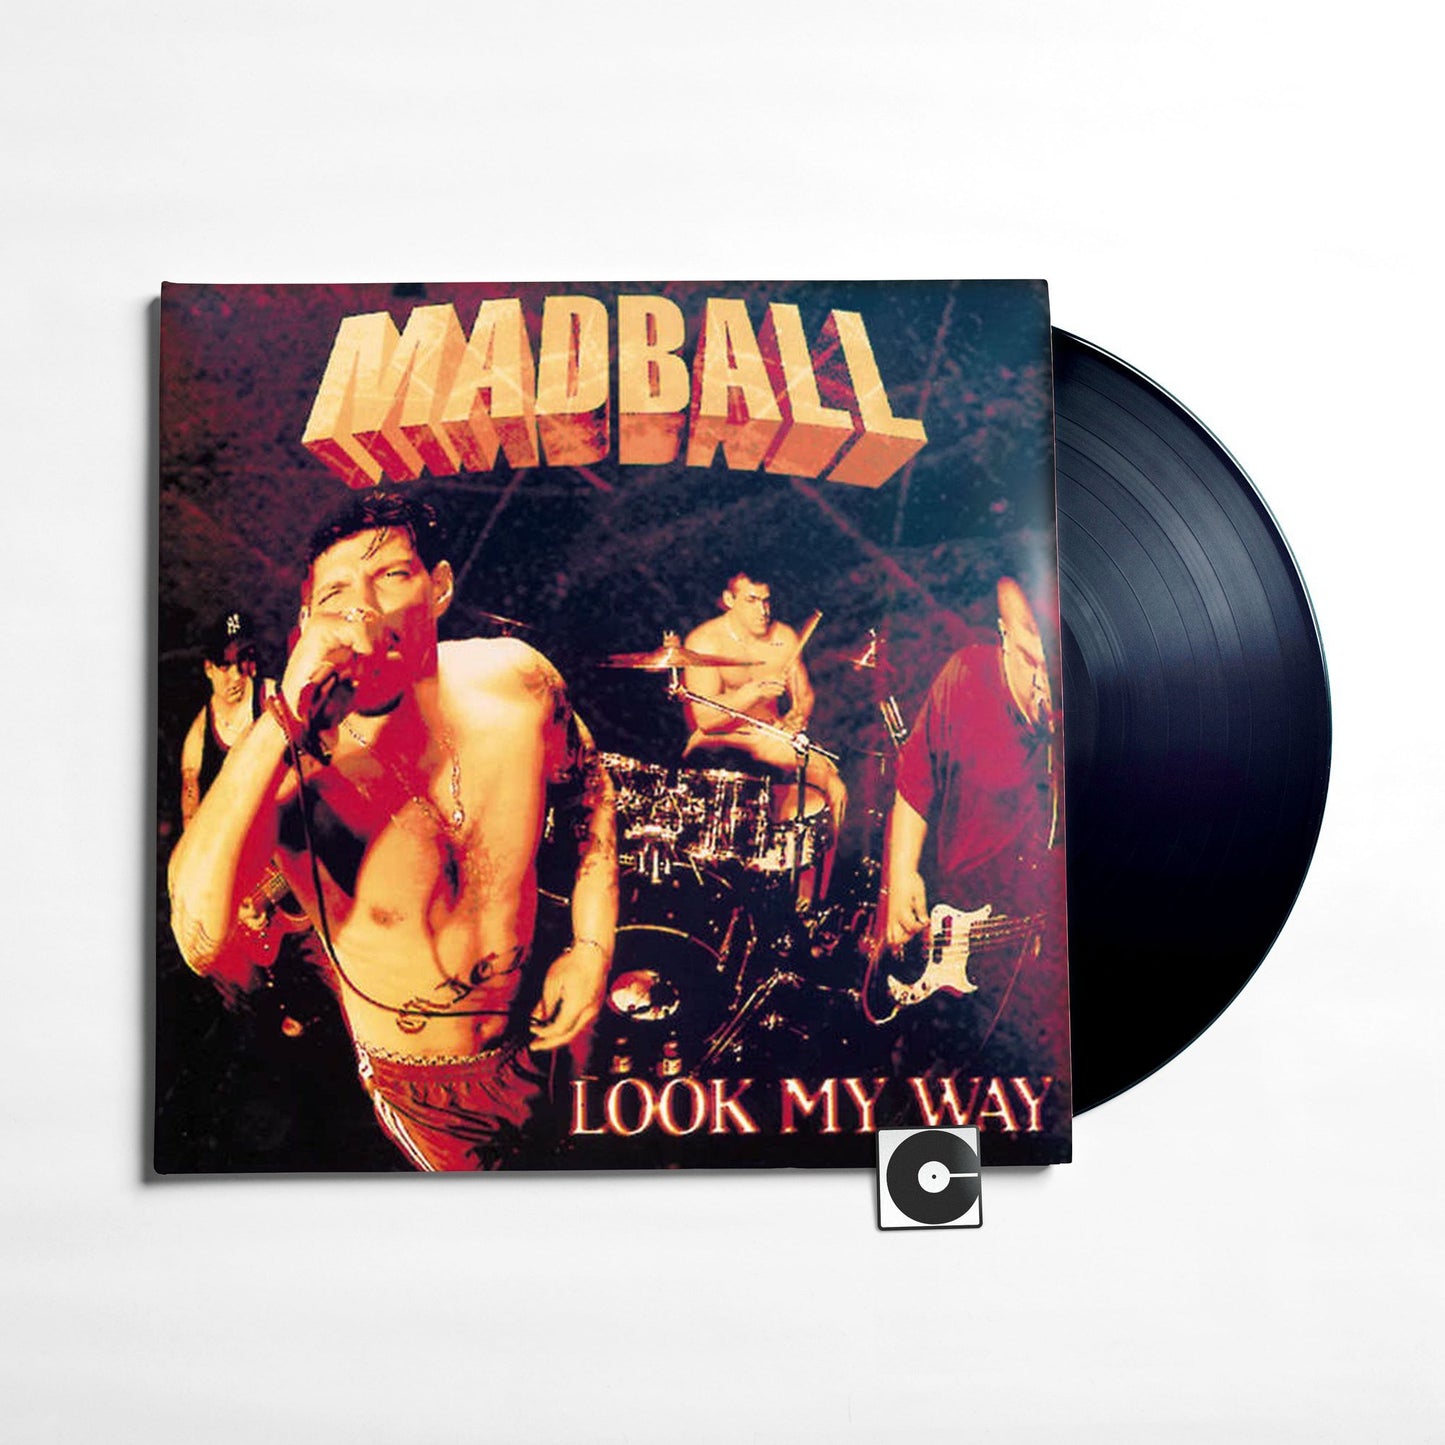 Madball - "Look My Way"